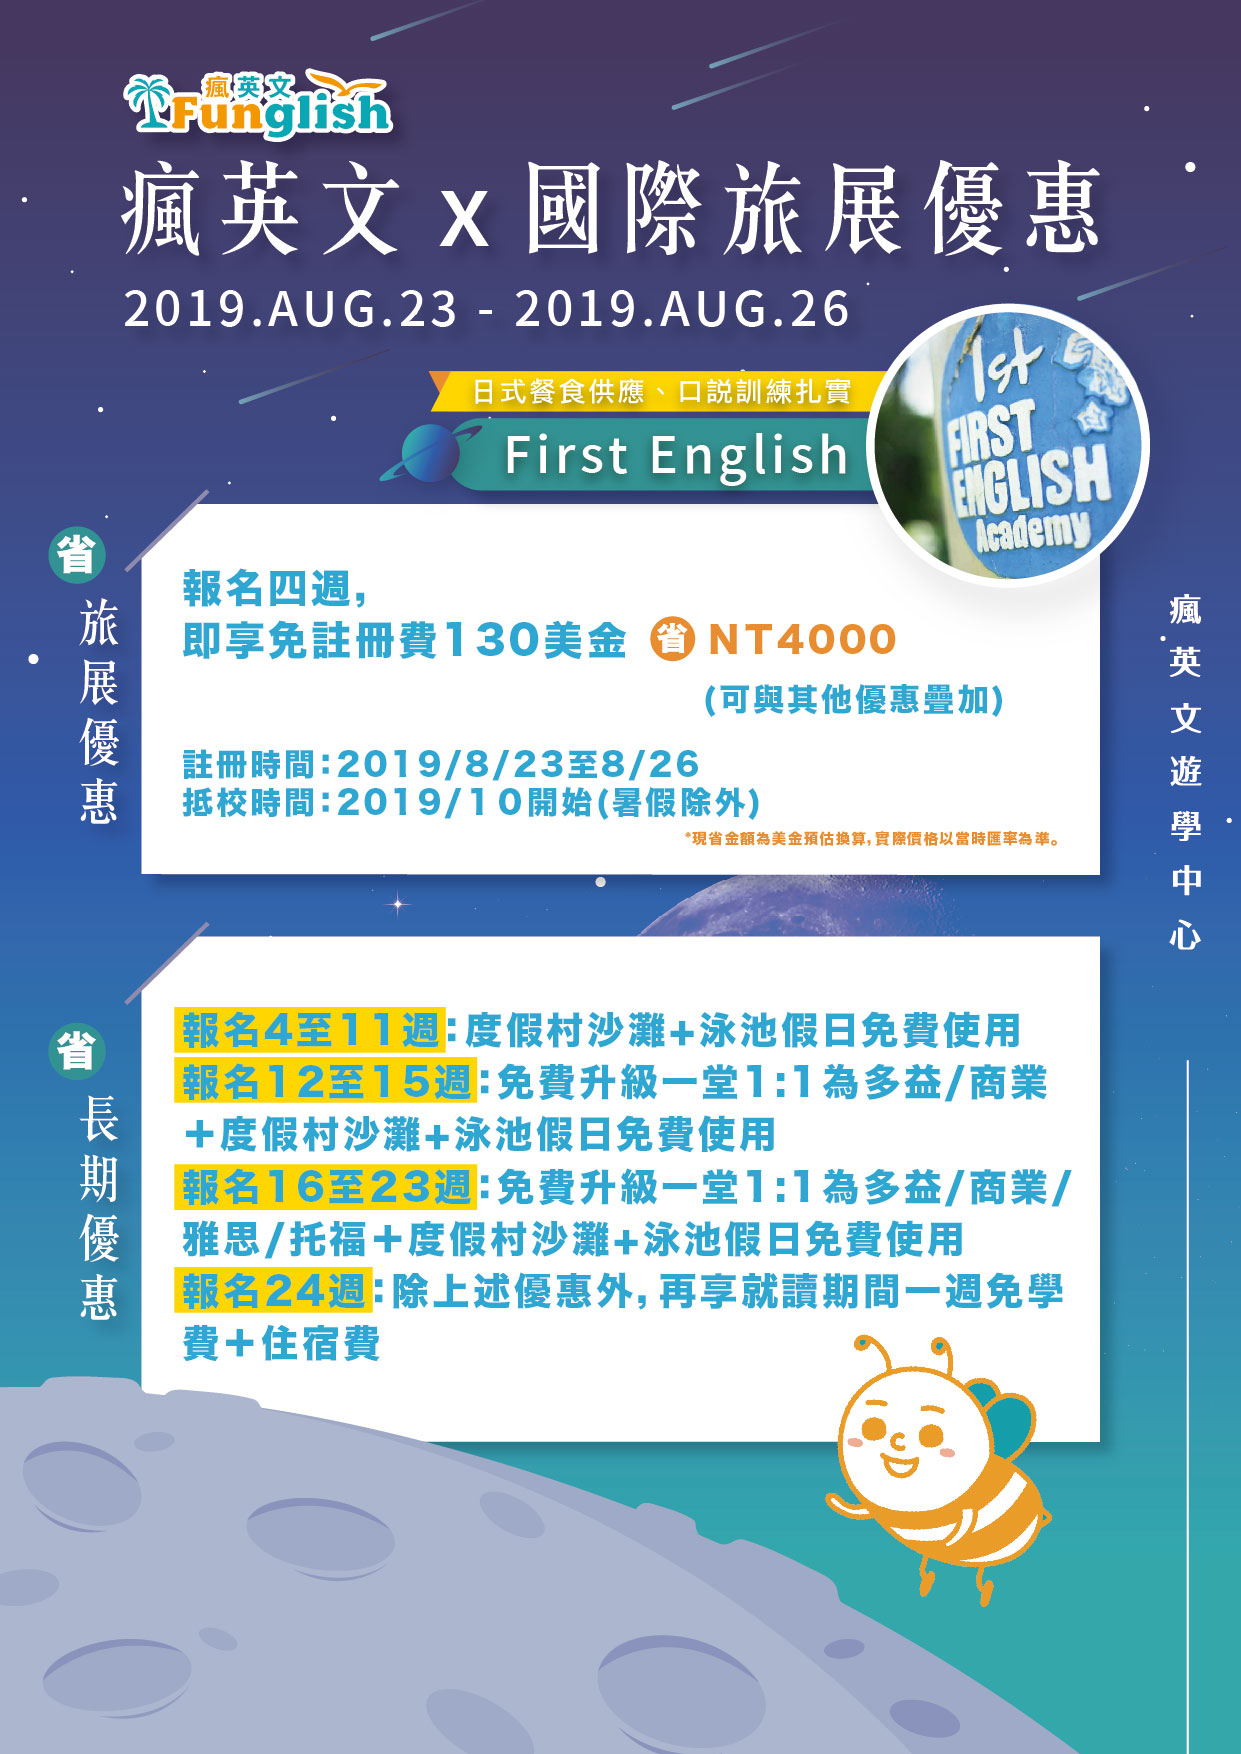 頁面_2019國際旅展_first English